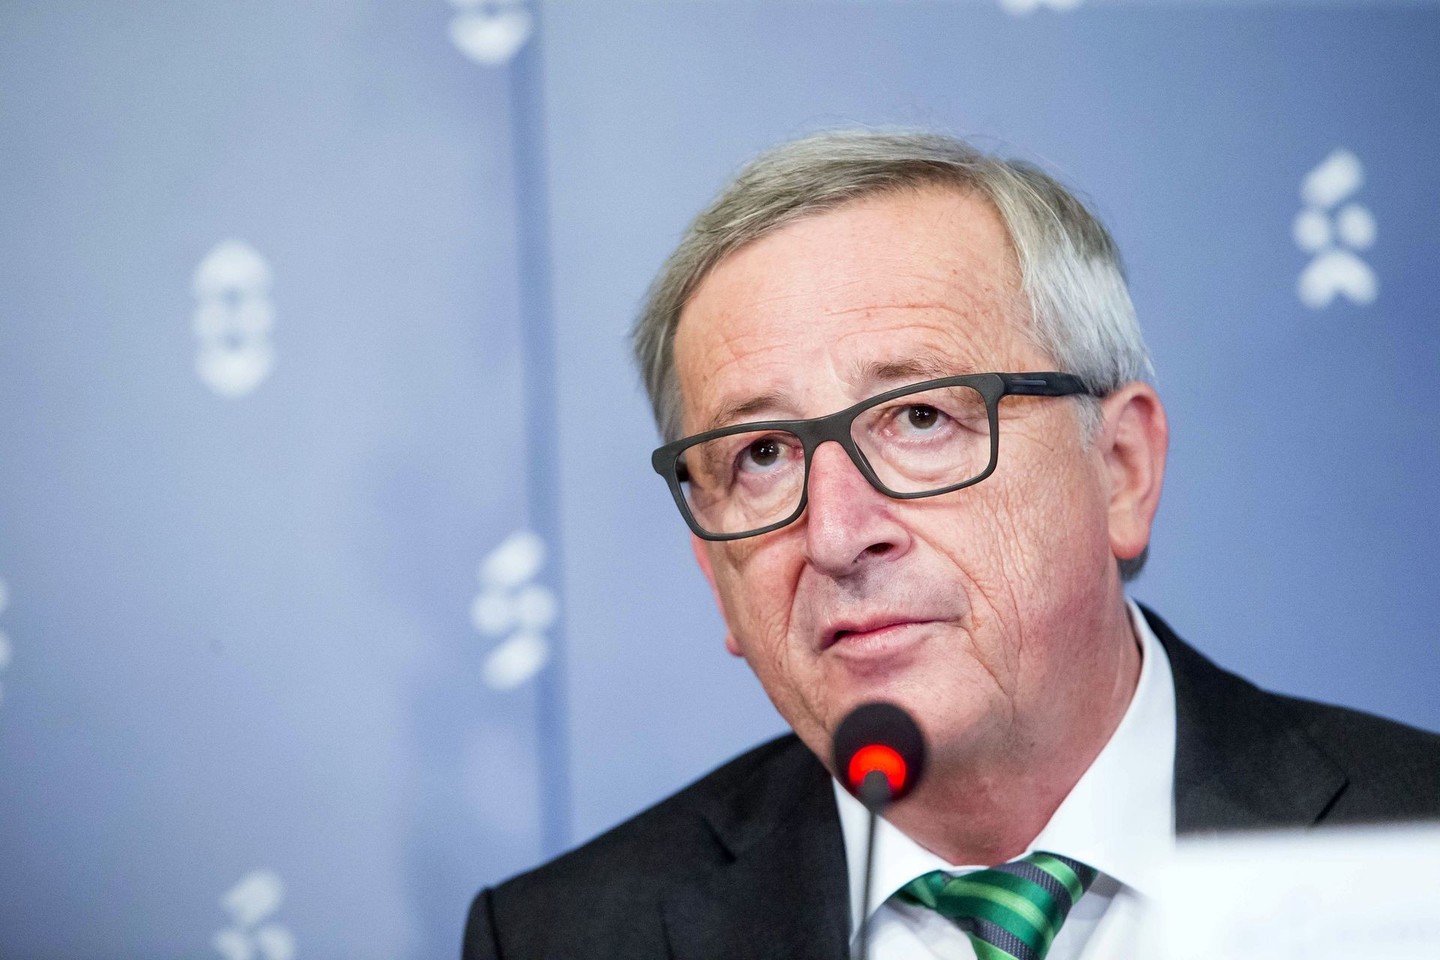 J.C. Junckerio komentarai rodo, kokia pažeidžiama tapo Sąjunga po JK referendumo dėl šalies išstojimo iš bloko.<br>AP nuotr.